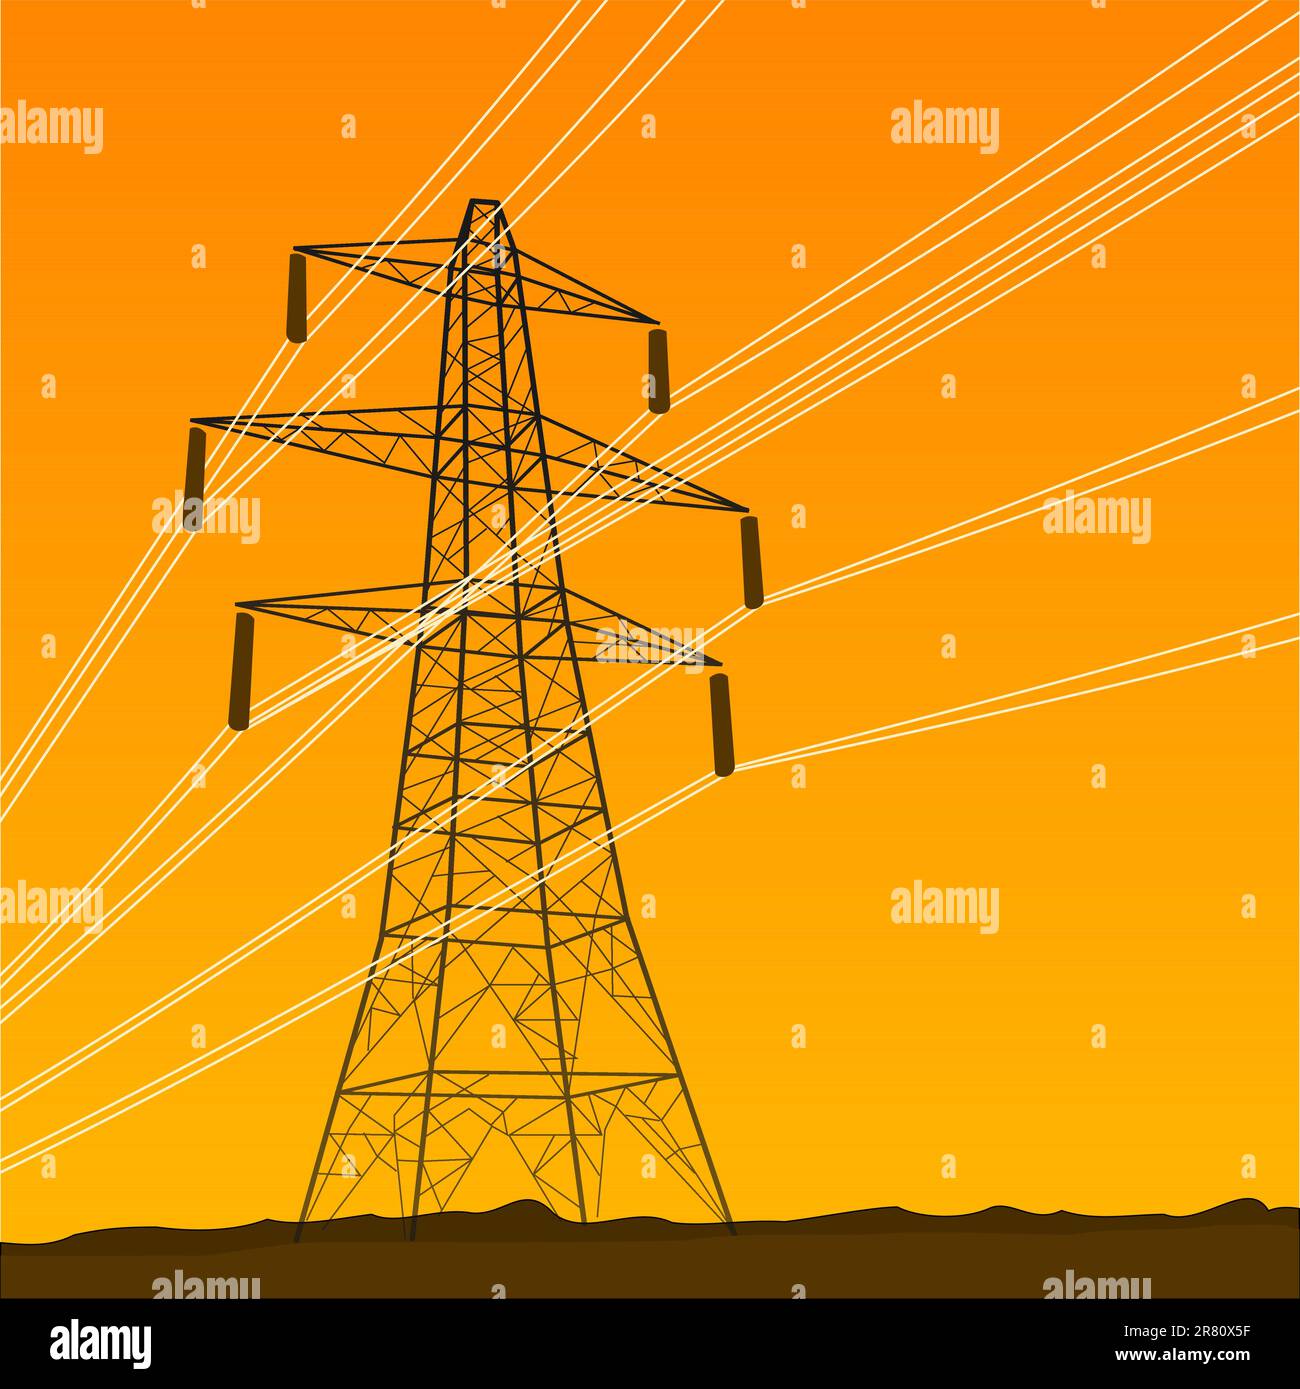 Illustration de la tour d'électricité haute tension sur fond orange Illustration de Vecteur